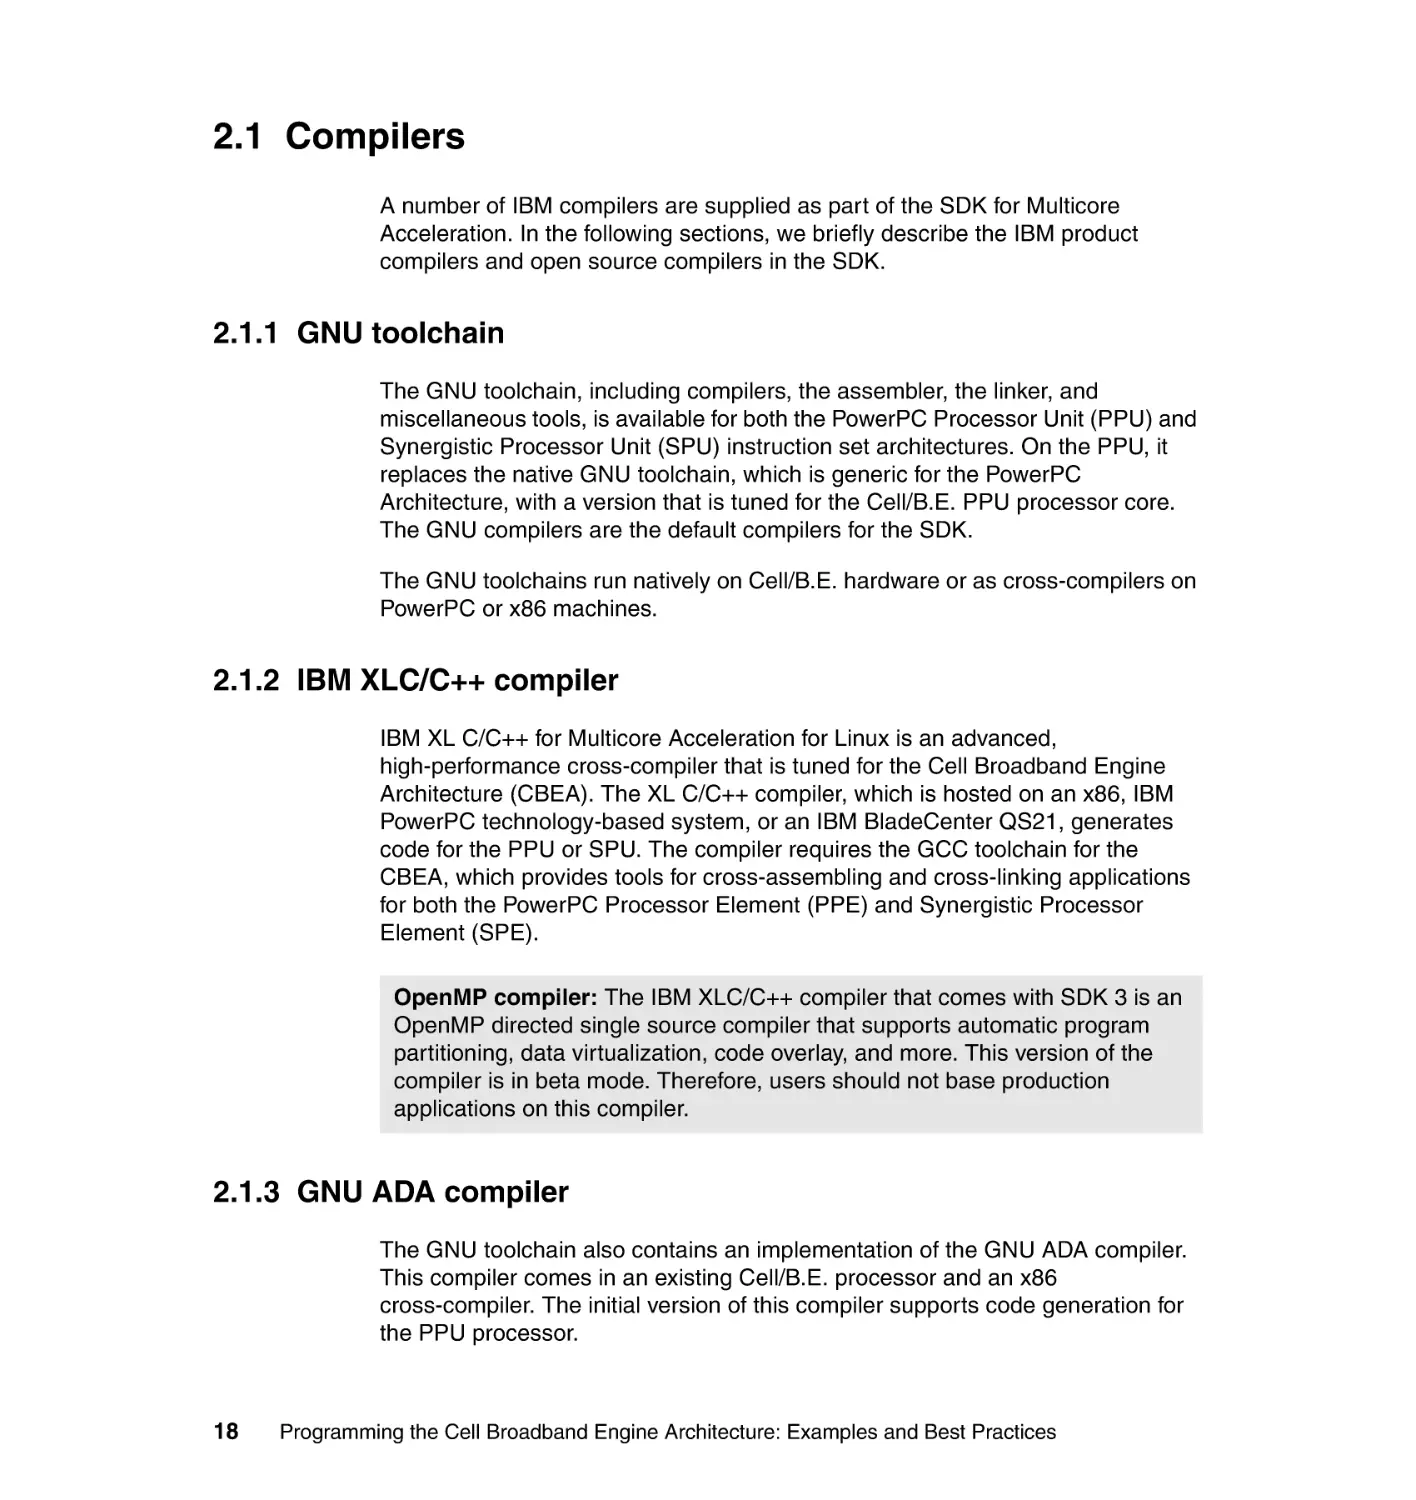 2.1 Compilers
2.1.1 GNU toolchain
2.1.2 IBM XLC/C++ compiler
2.1.3 GNU ADA compiler